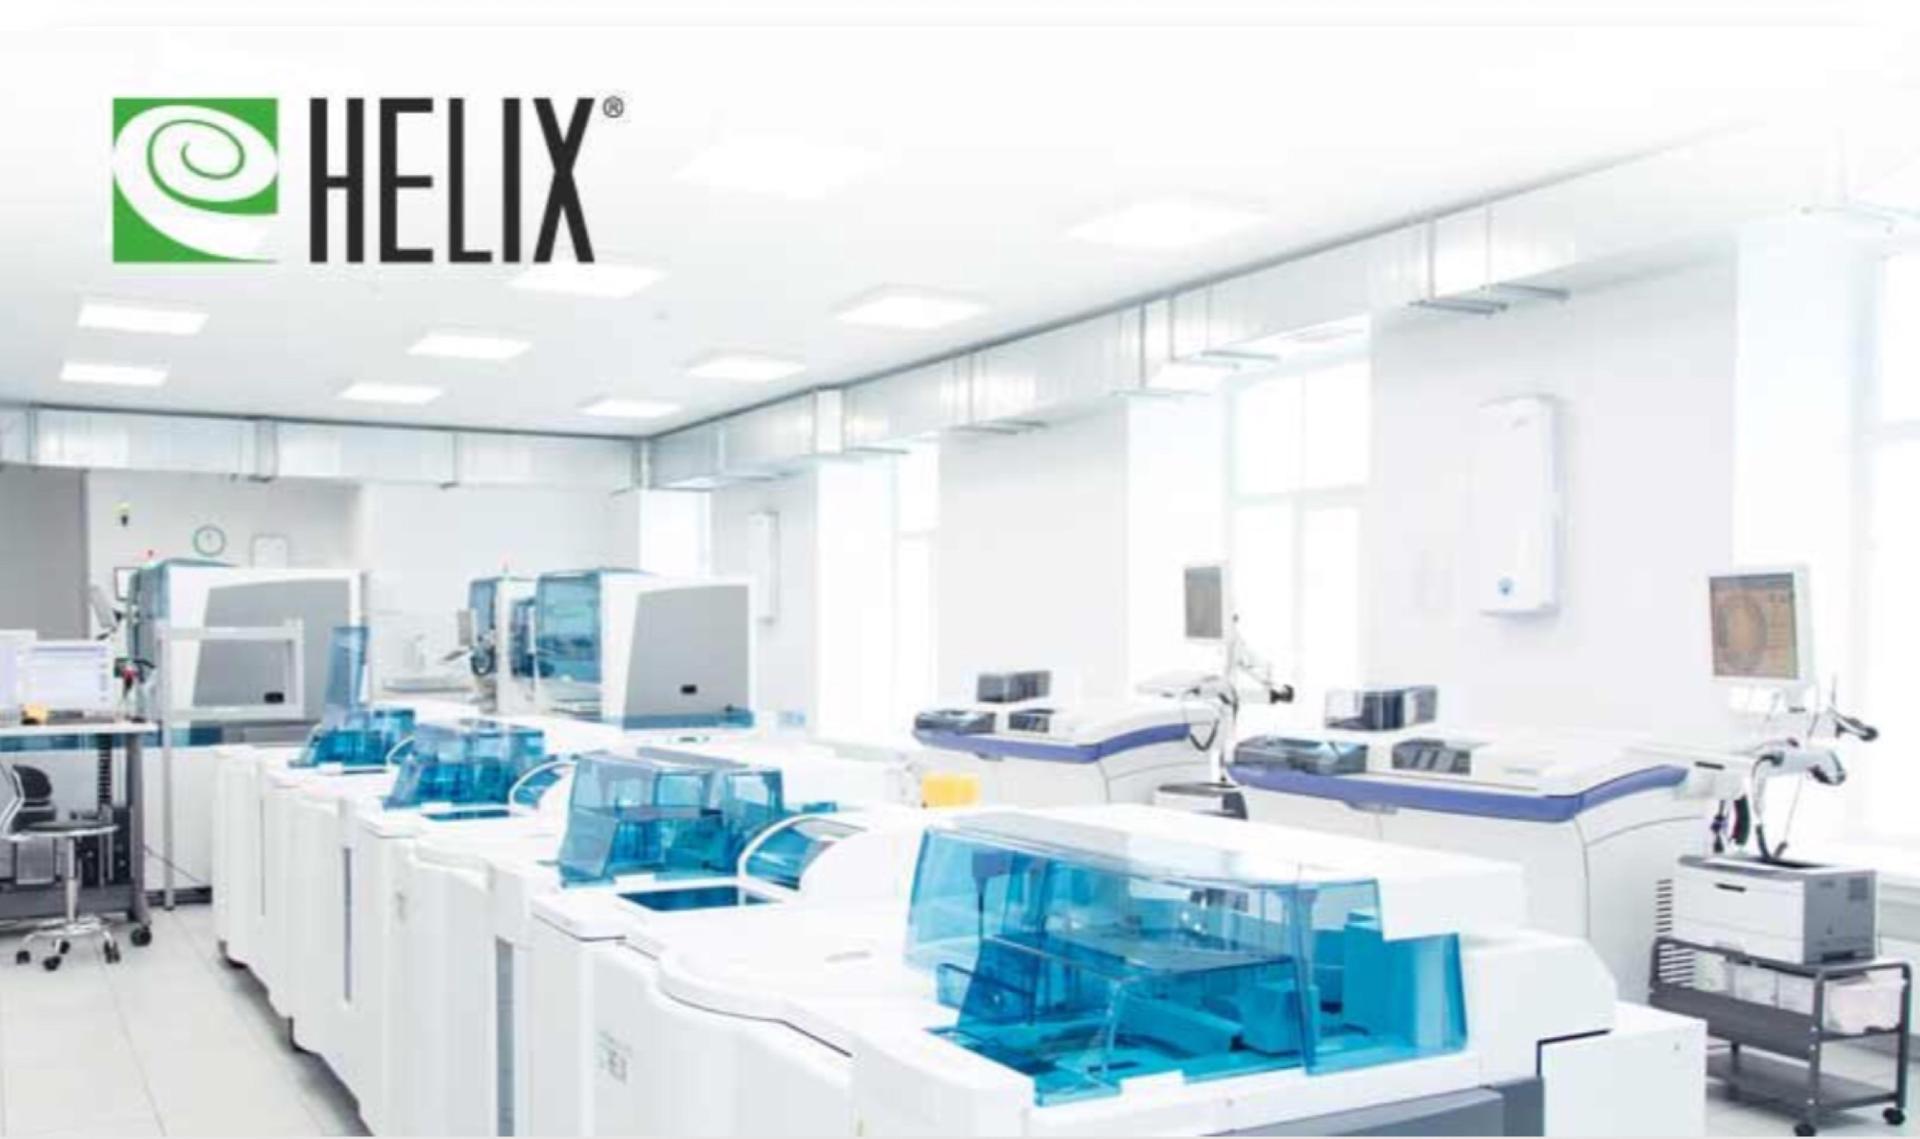 Сайт лаборатории хеликс москва. Лабораторная служба Хеликс. Мед лаборатории Helix. Хеликс лаборатория фото. Хеликс лаборатория эмблема.